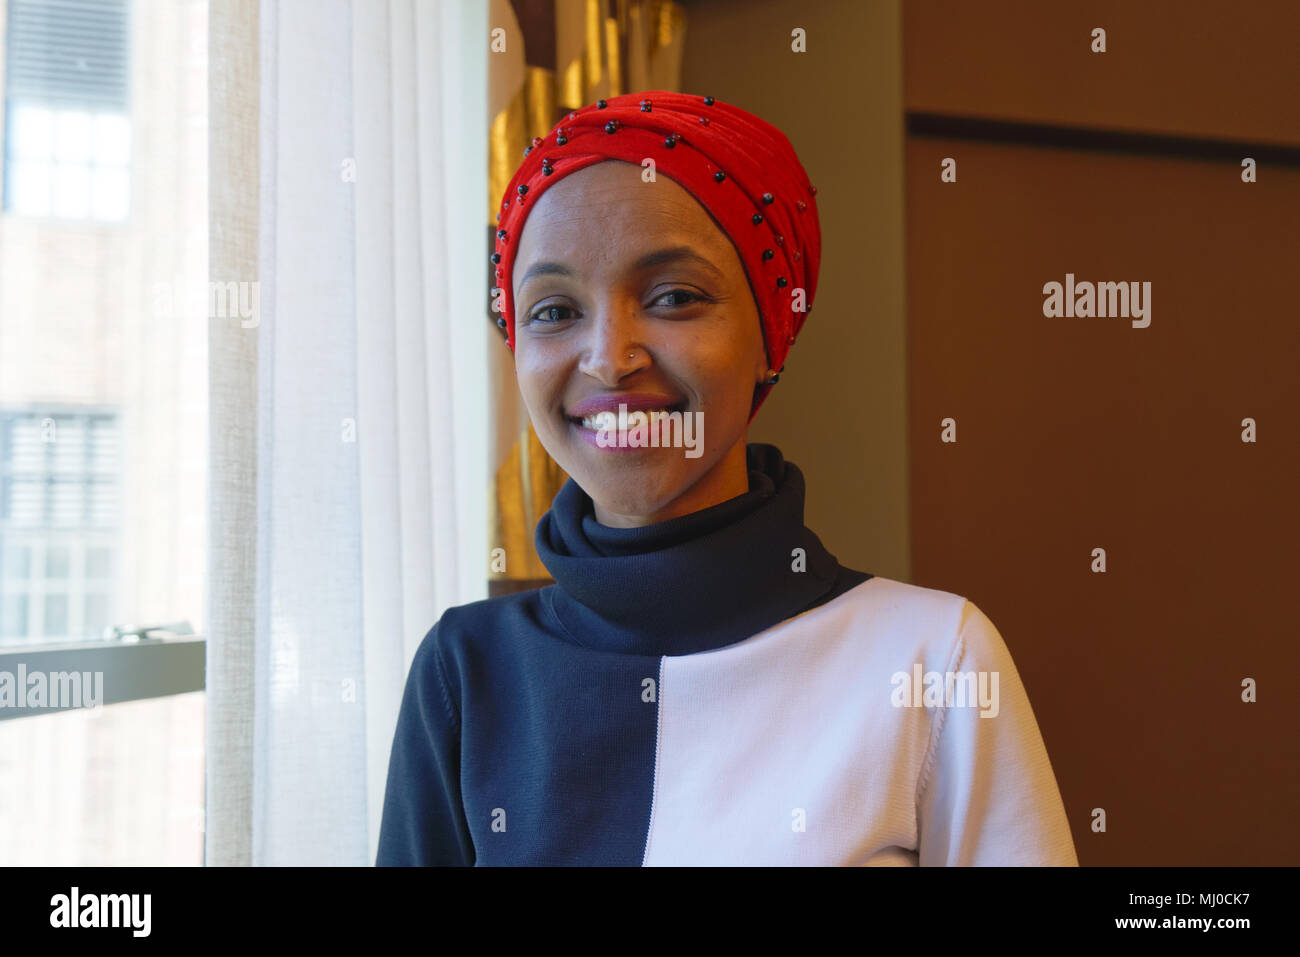 In 2016, Ilhan Omar ha vinto una sede nel Minnesota State Legislature, diventando il primo legislatore Somali-American negli Stati Uniti. Foto Stock